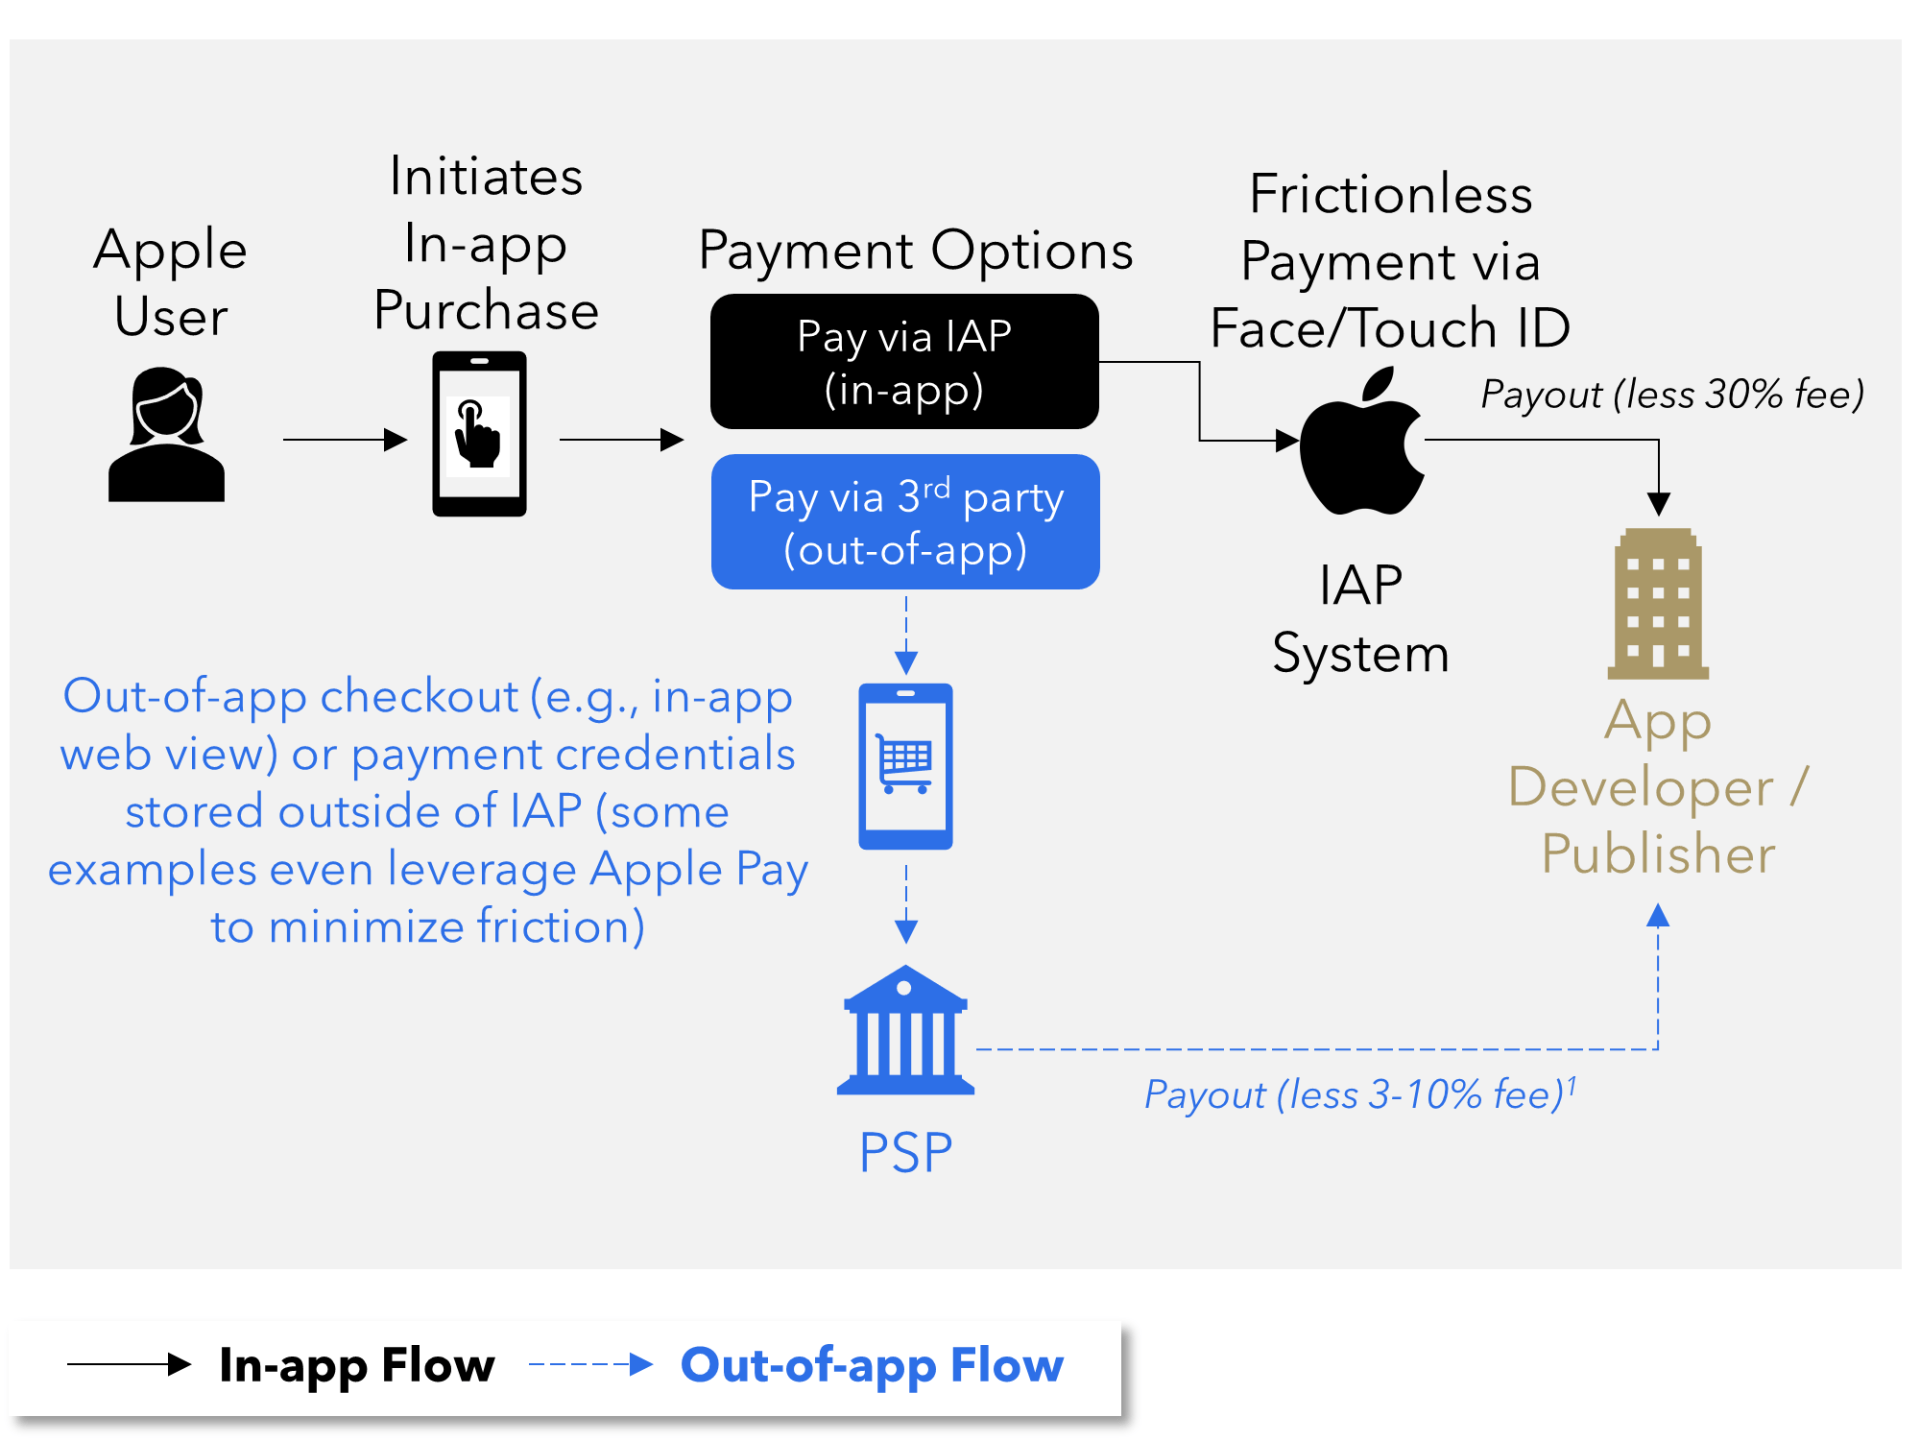 FIGURE 10: Out-of-app Payment Flow vs. IAP (illustrative)